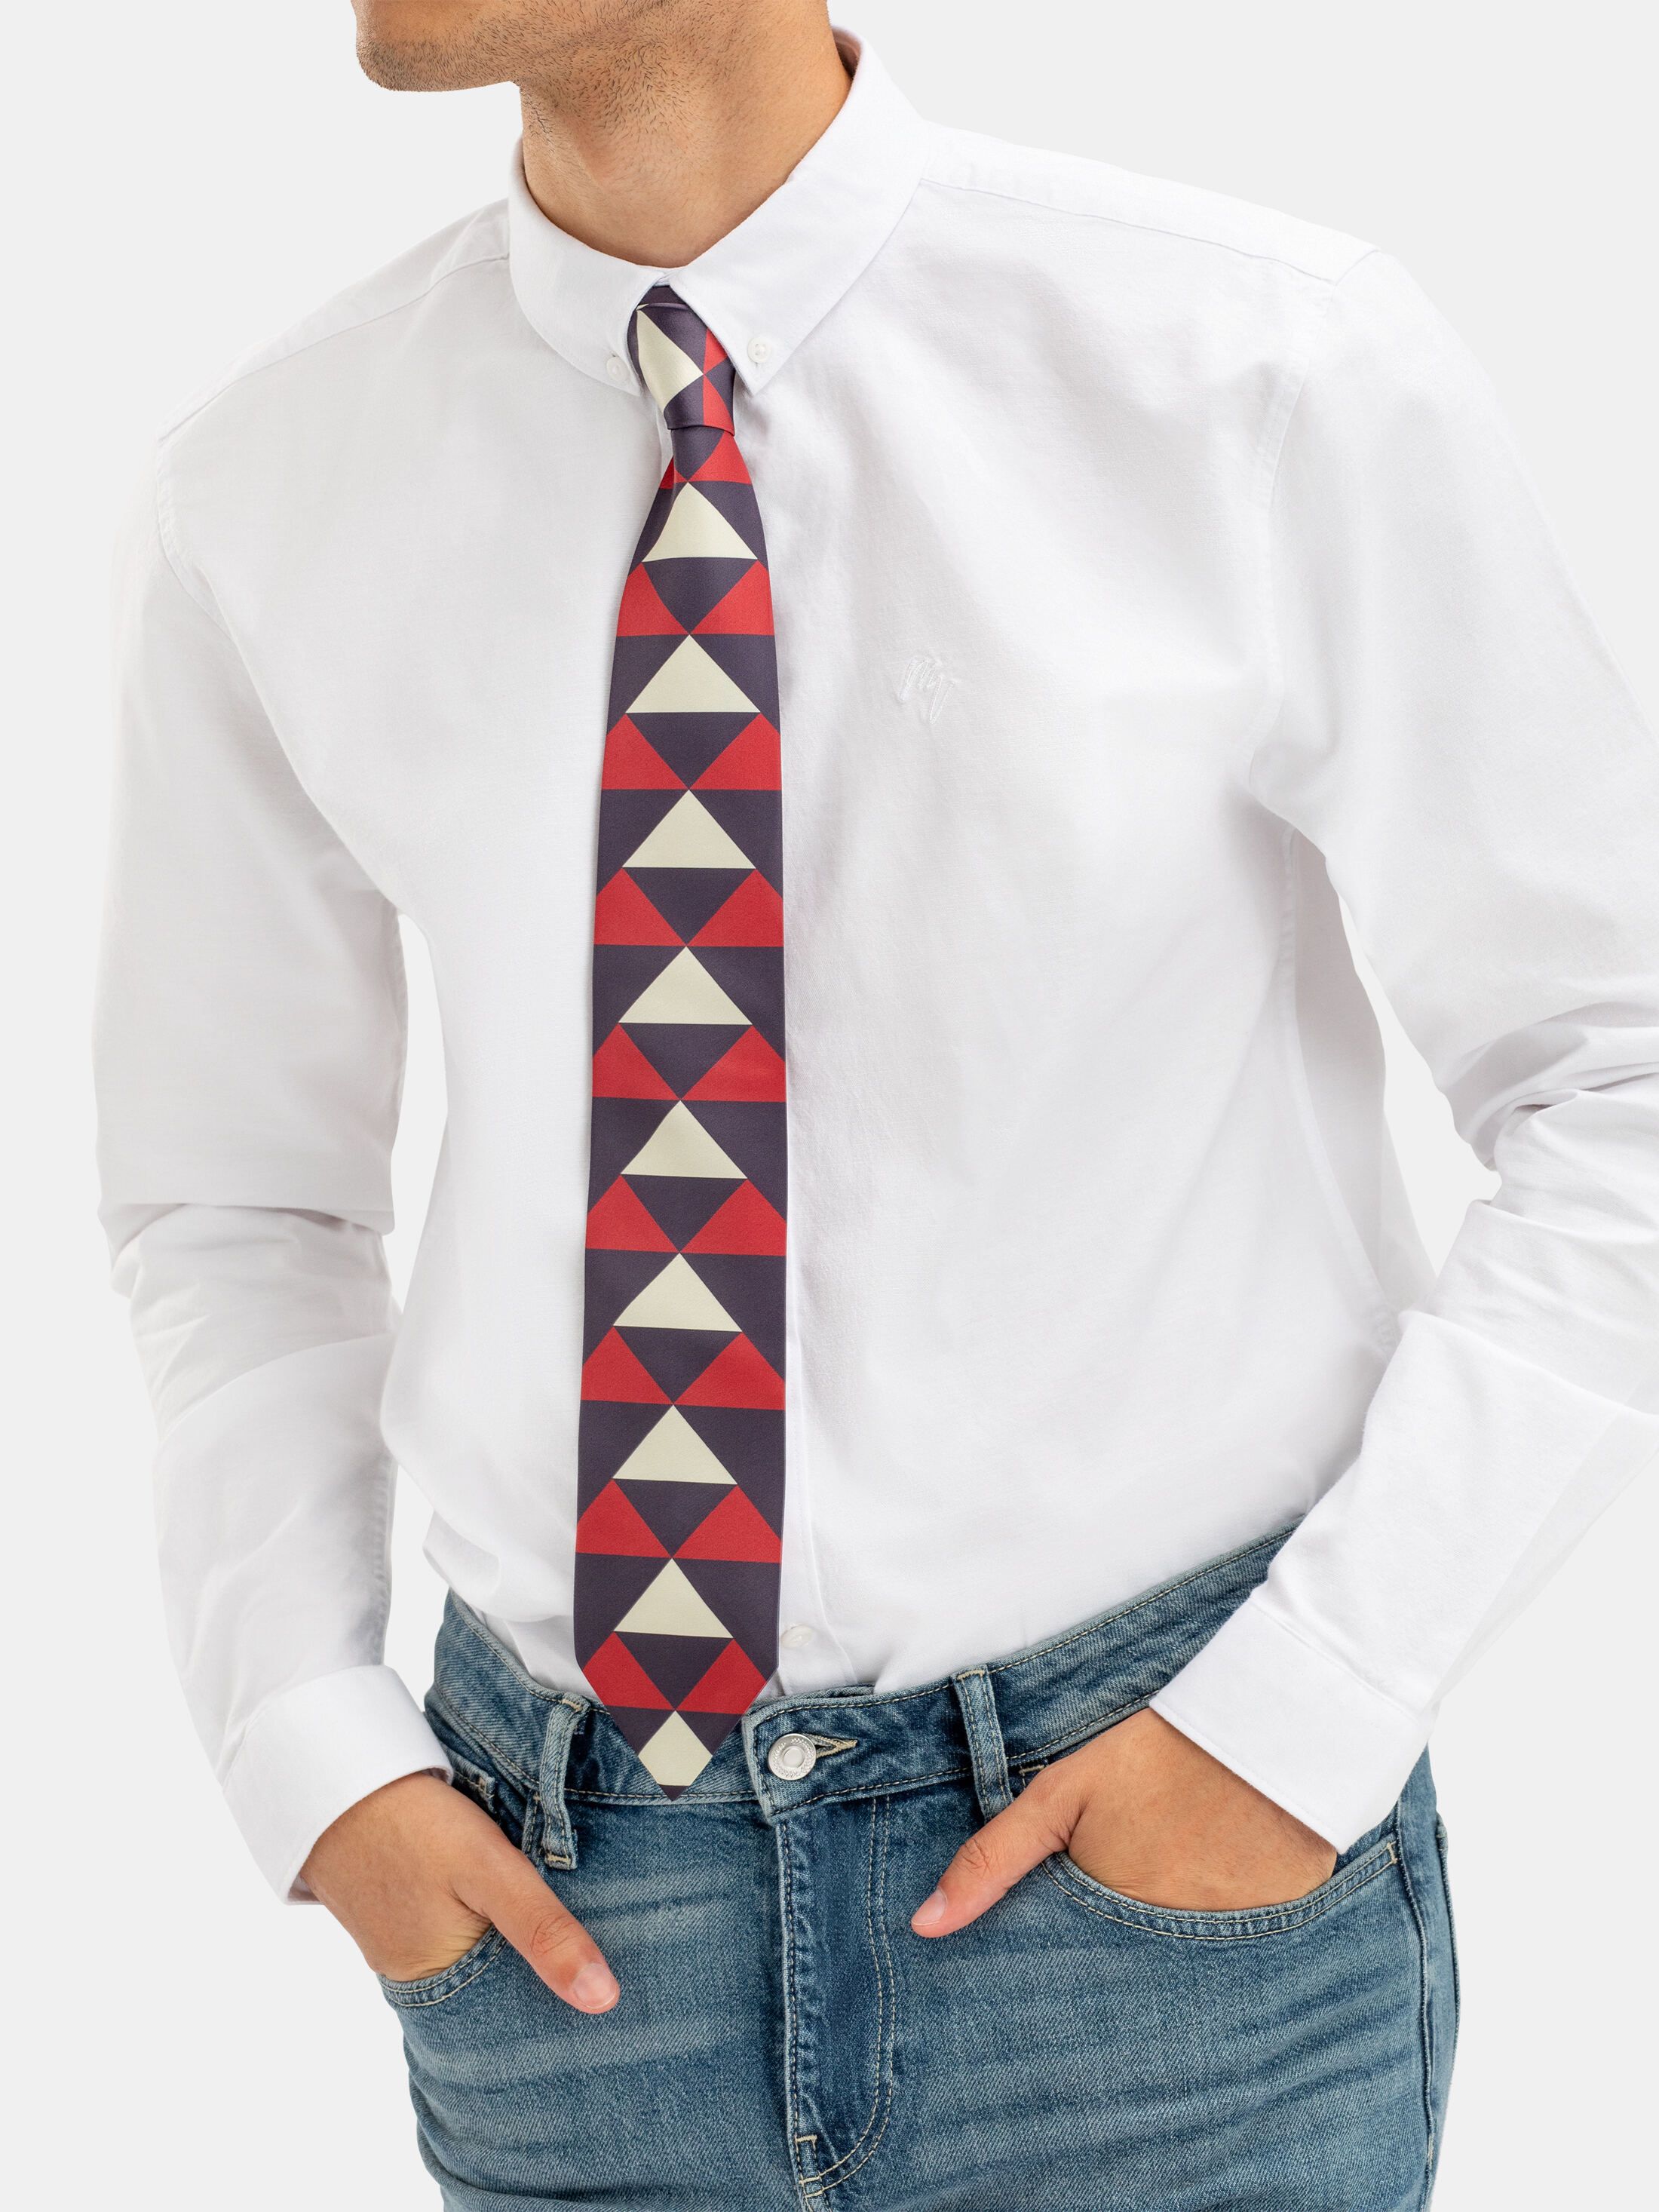 corbatas de hombre online